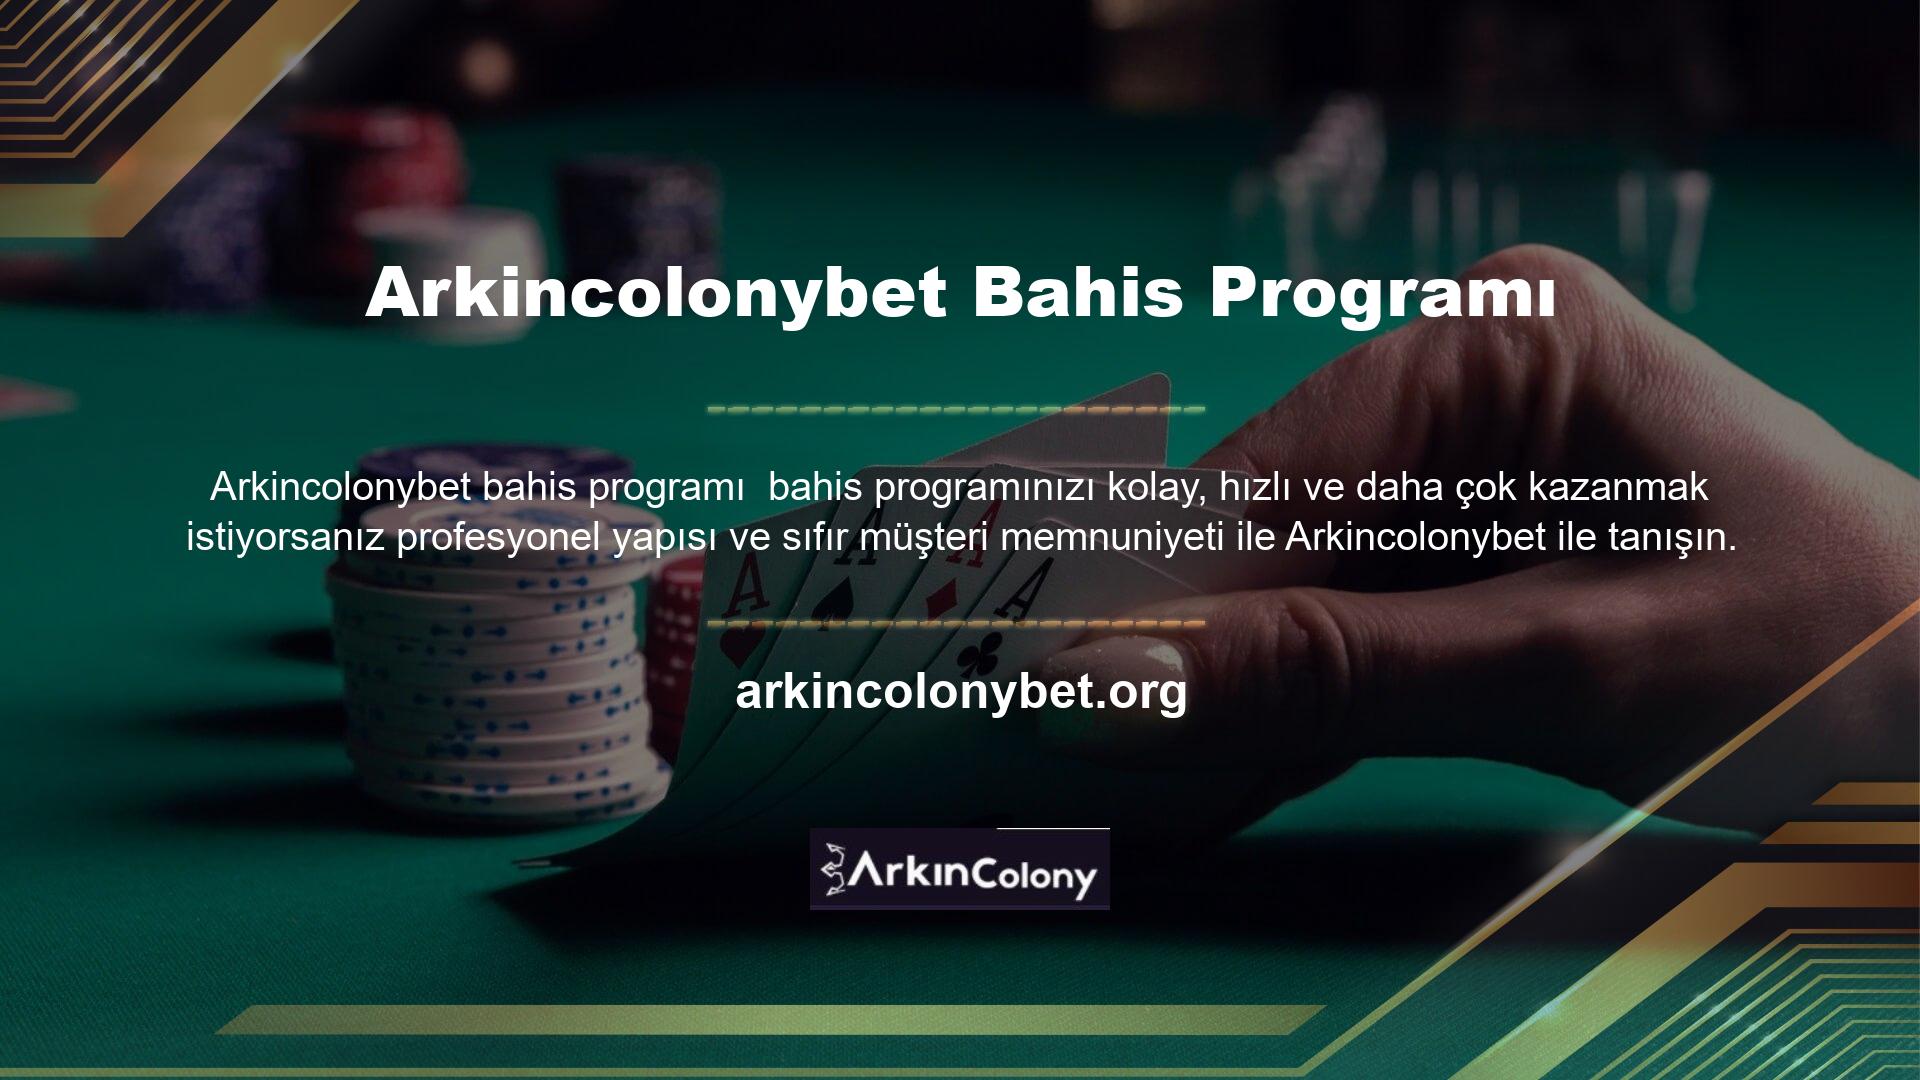 Arkincolonybet, Türkiye'nin en iyi ve en popüler bahis sitelerinden biridir ve sürekli gelişen altyapısı sayesinde en hızlı bahislerden emin olabilirsiniz